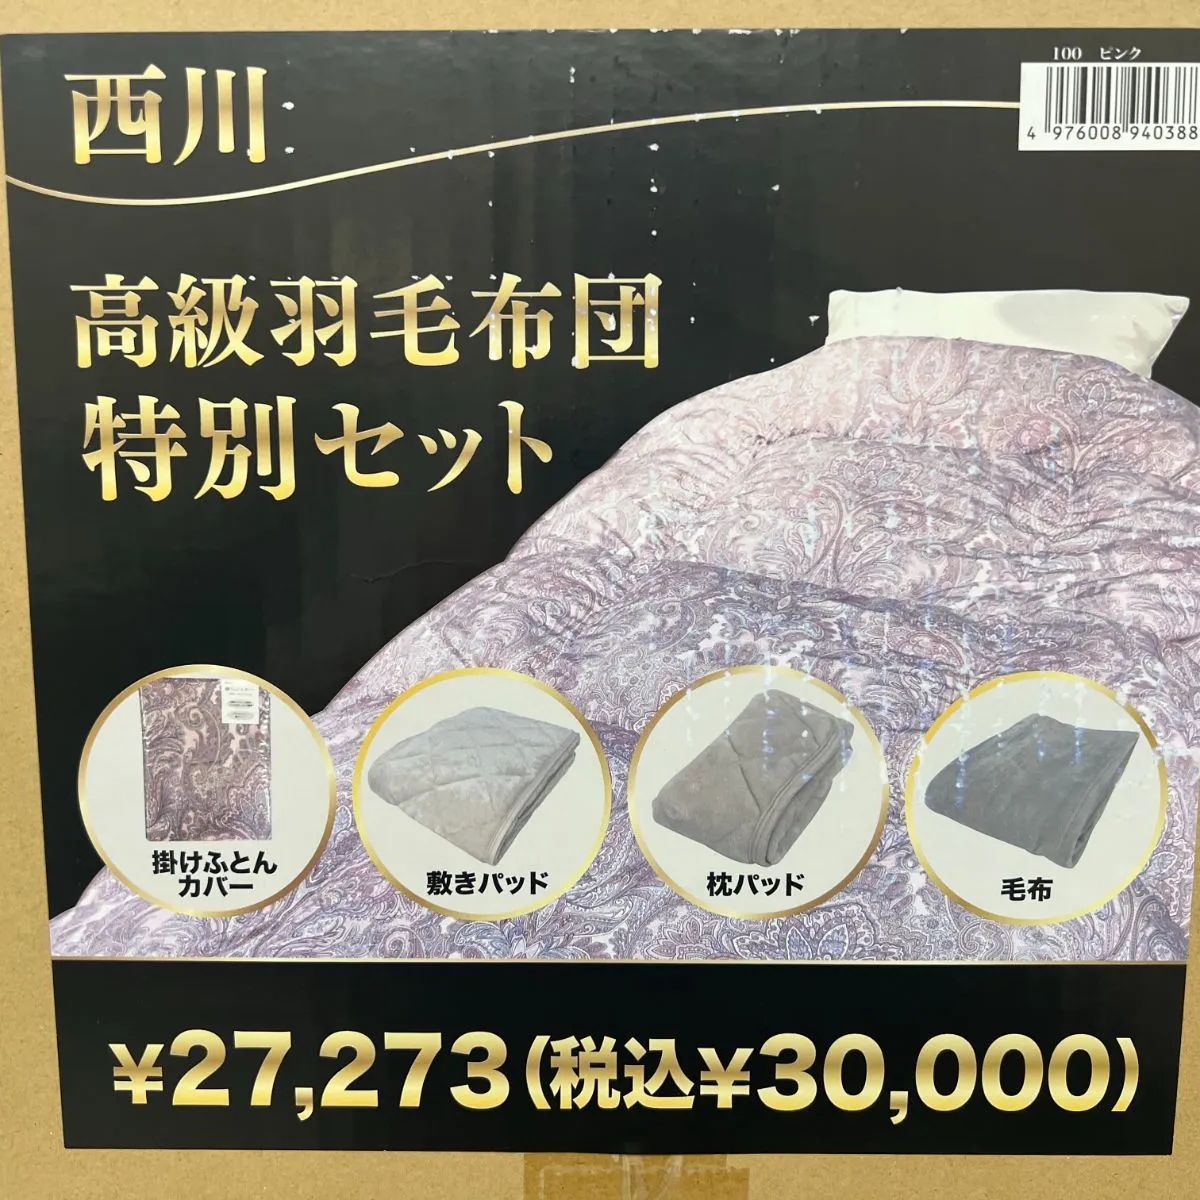 西川 羽毛布団付5点セット ピンク - トライアルネットショップ - メルカリ